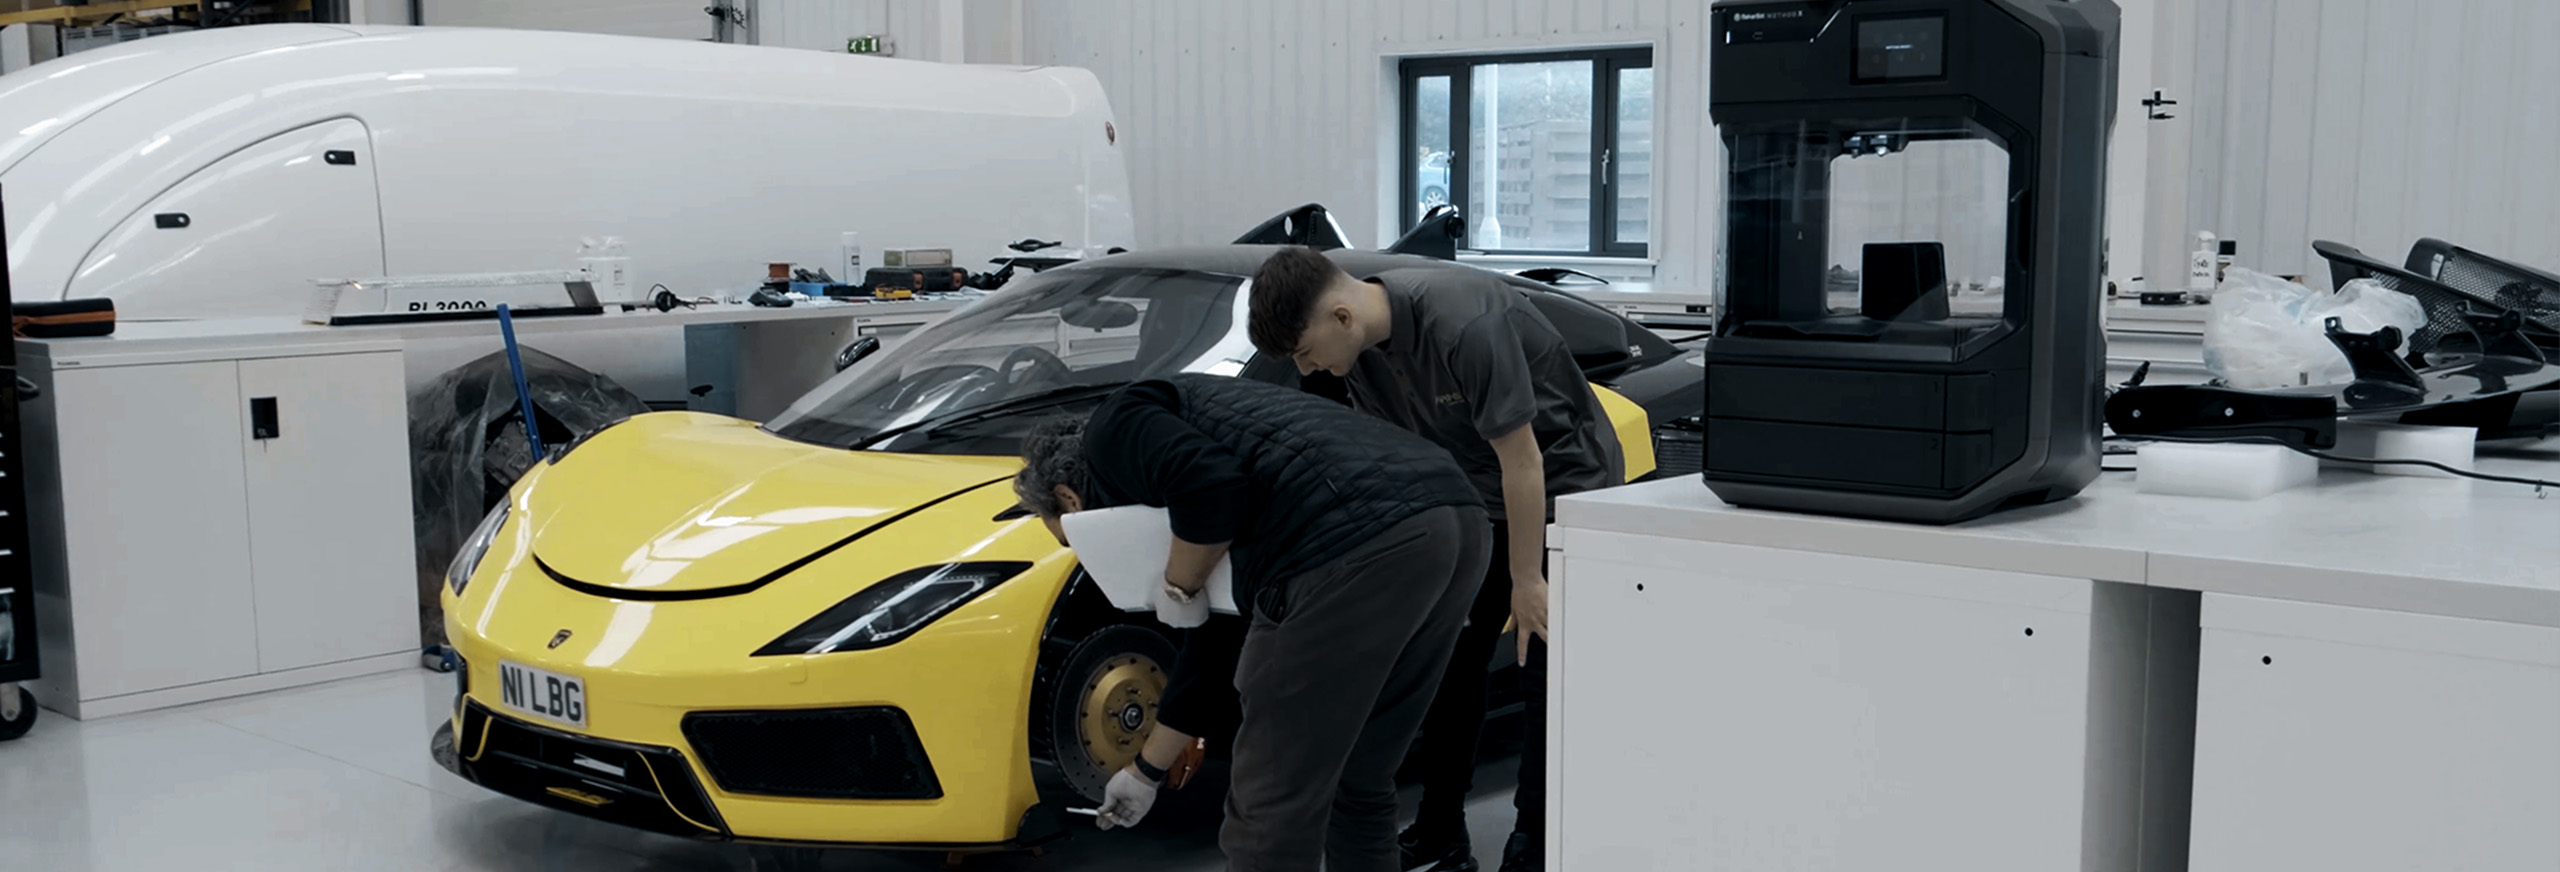 Arash Motor Company utiliza las impresoras 3D industriales Makerbot Method X para fabricar las piezas de producción necesarias para sus coches